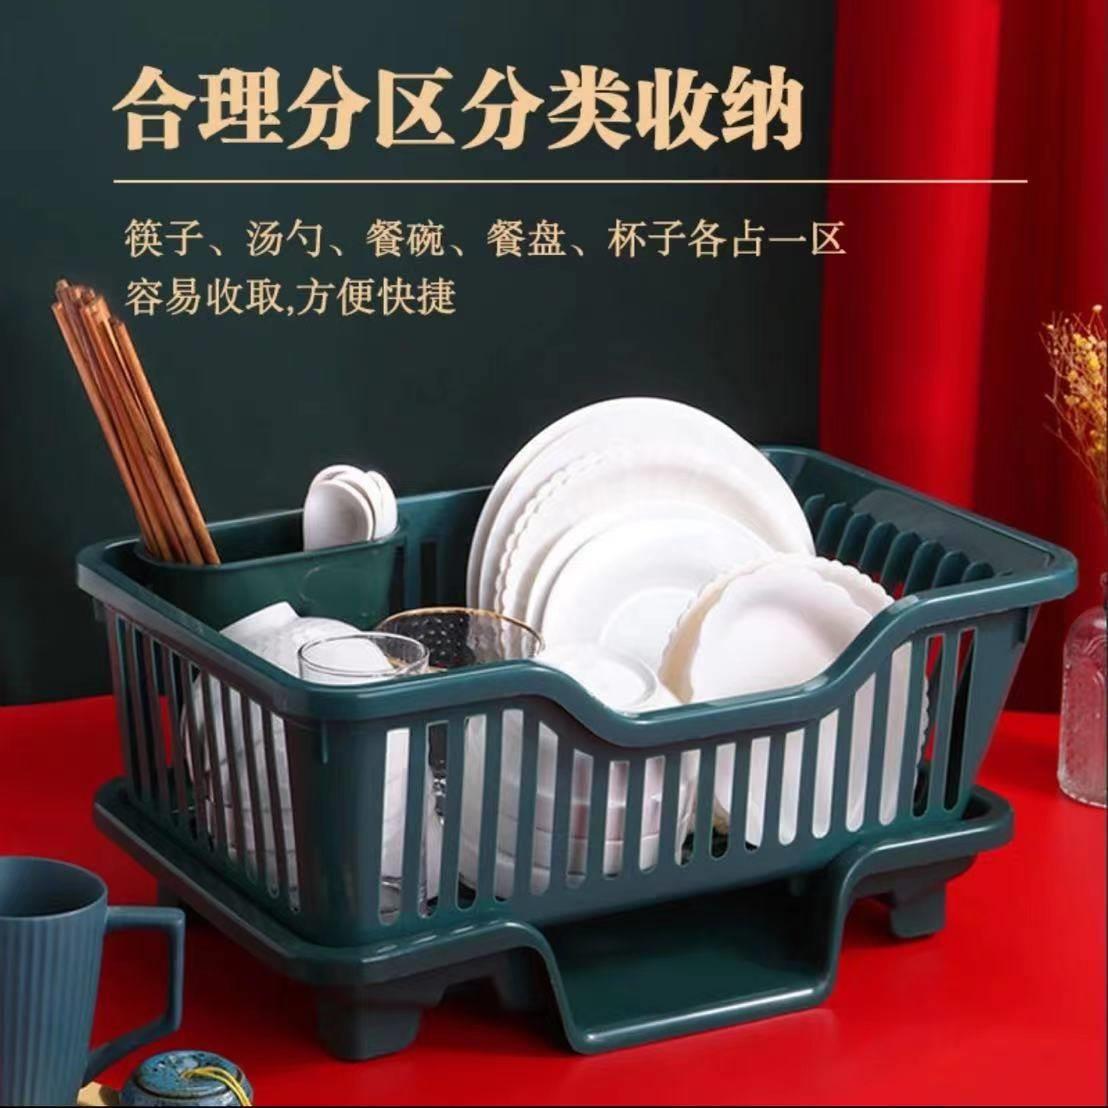 祥殿精品沥水碗架新款水槽放碗架筷子餐具置物架果蔬沥水篮收纳篮